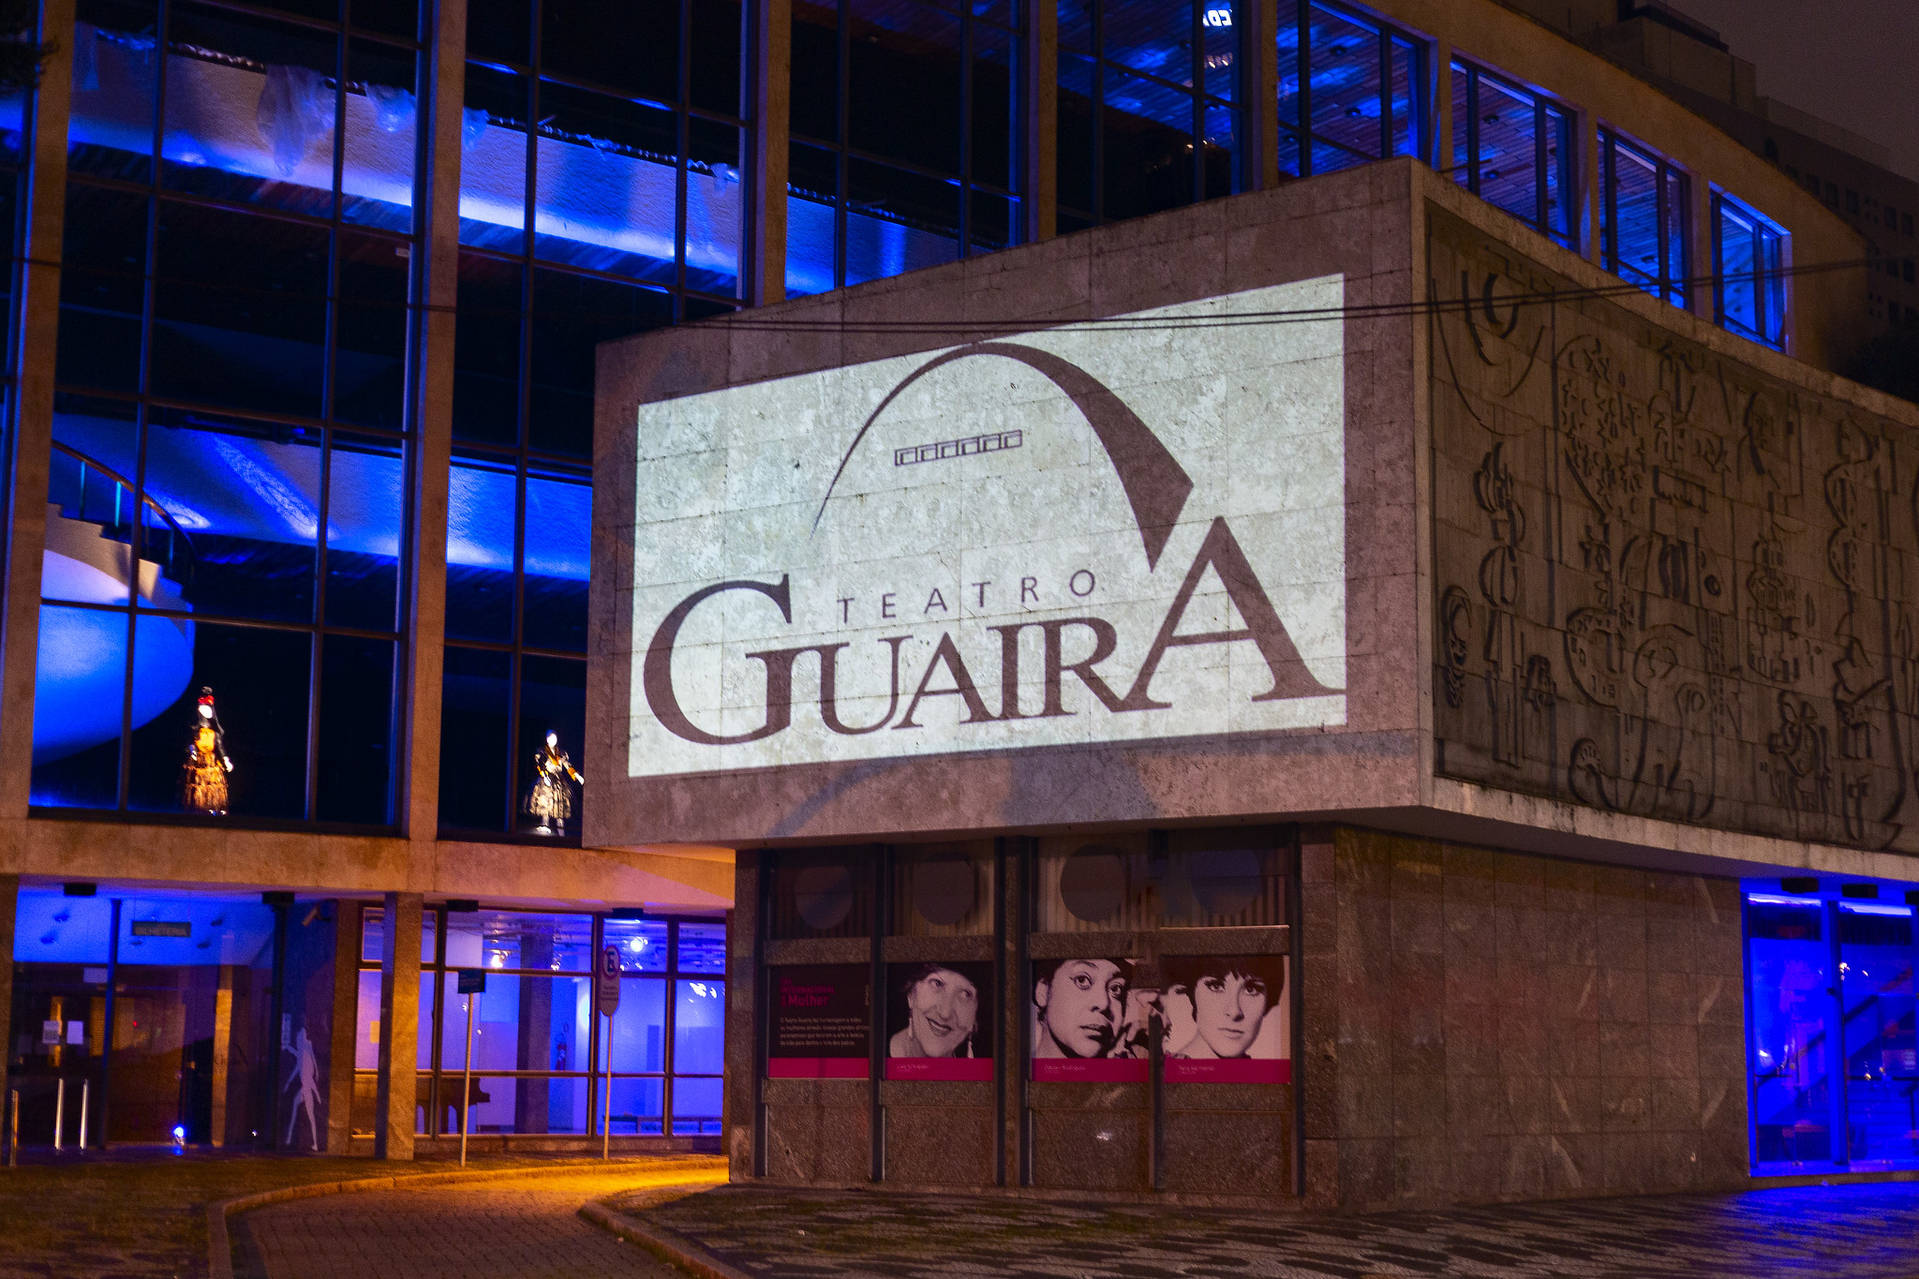  Balé Teatro Guaíra apresentará “O Lago dos Cisnes”